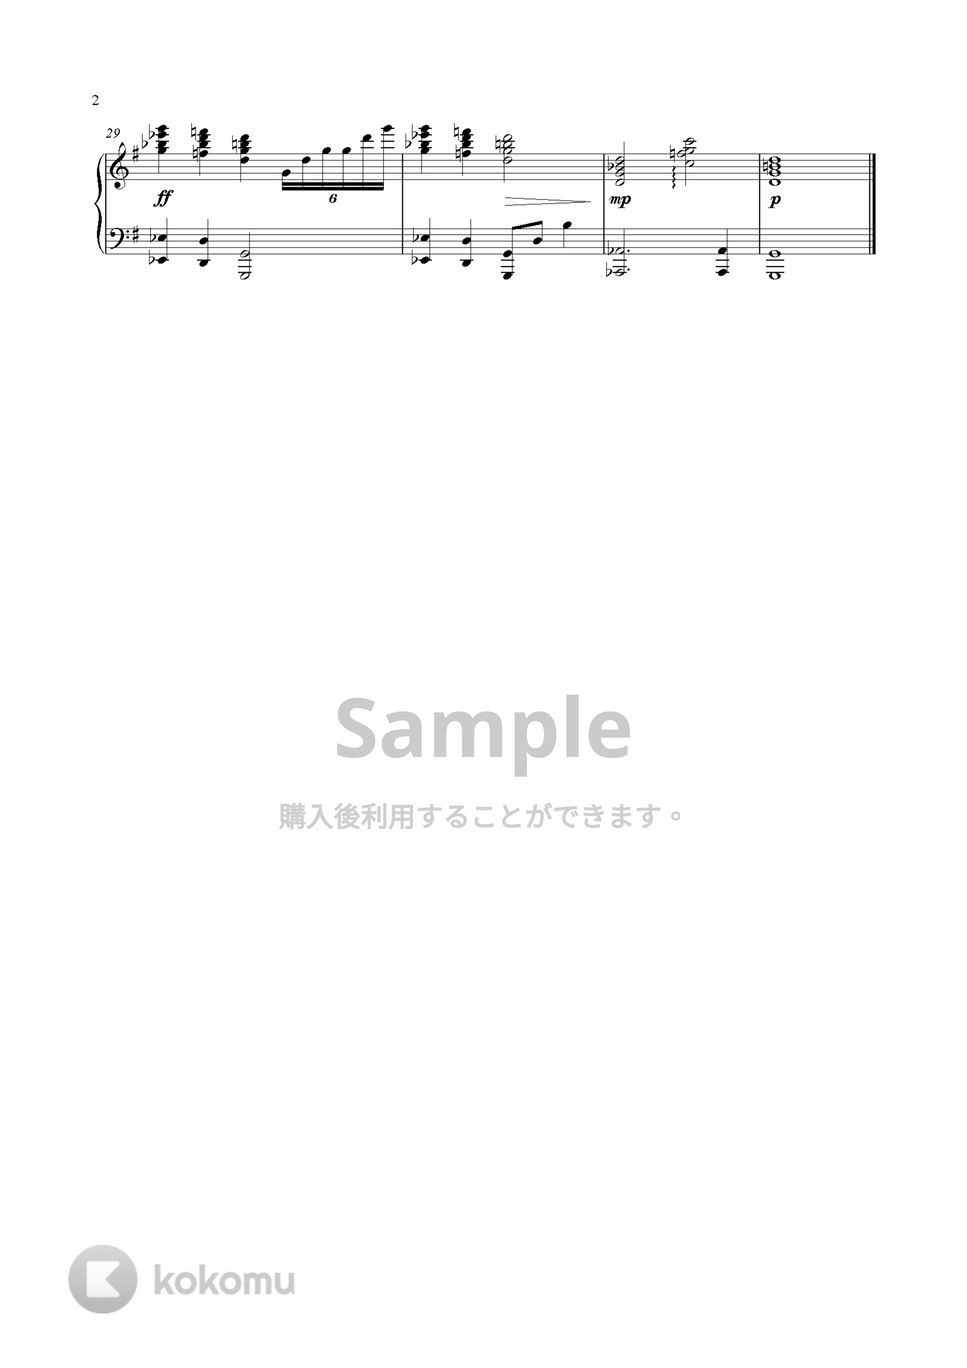 ワンピース - To The Grand Line (Piano Version) by GoGoPiano